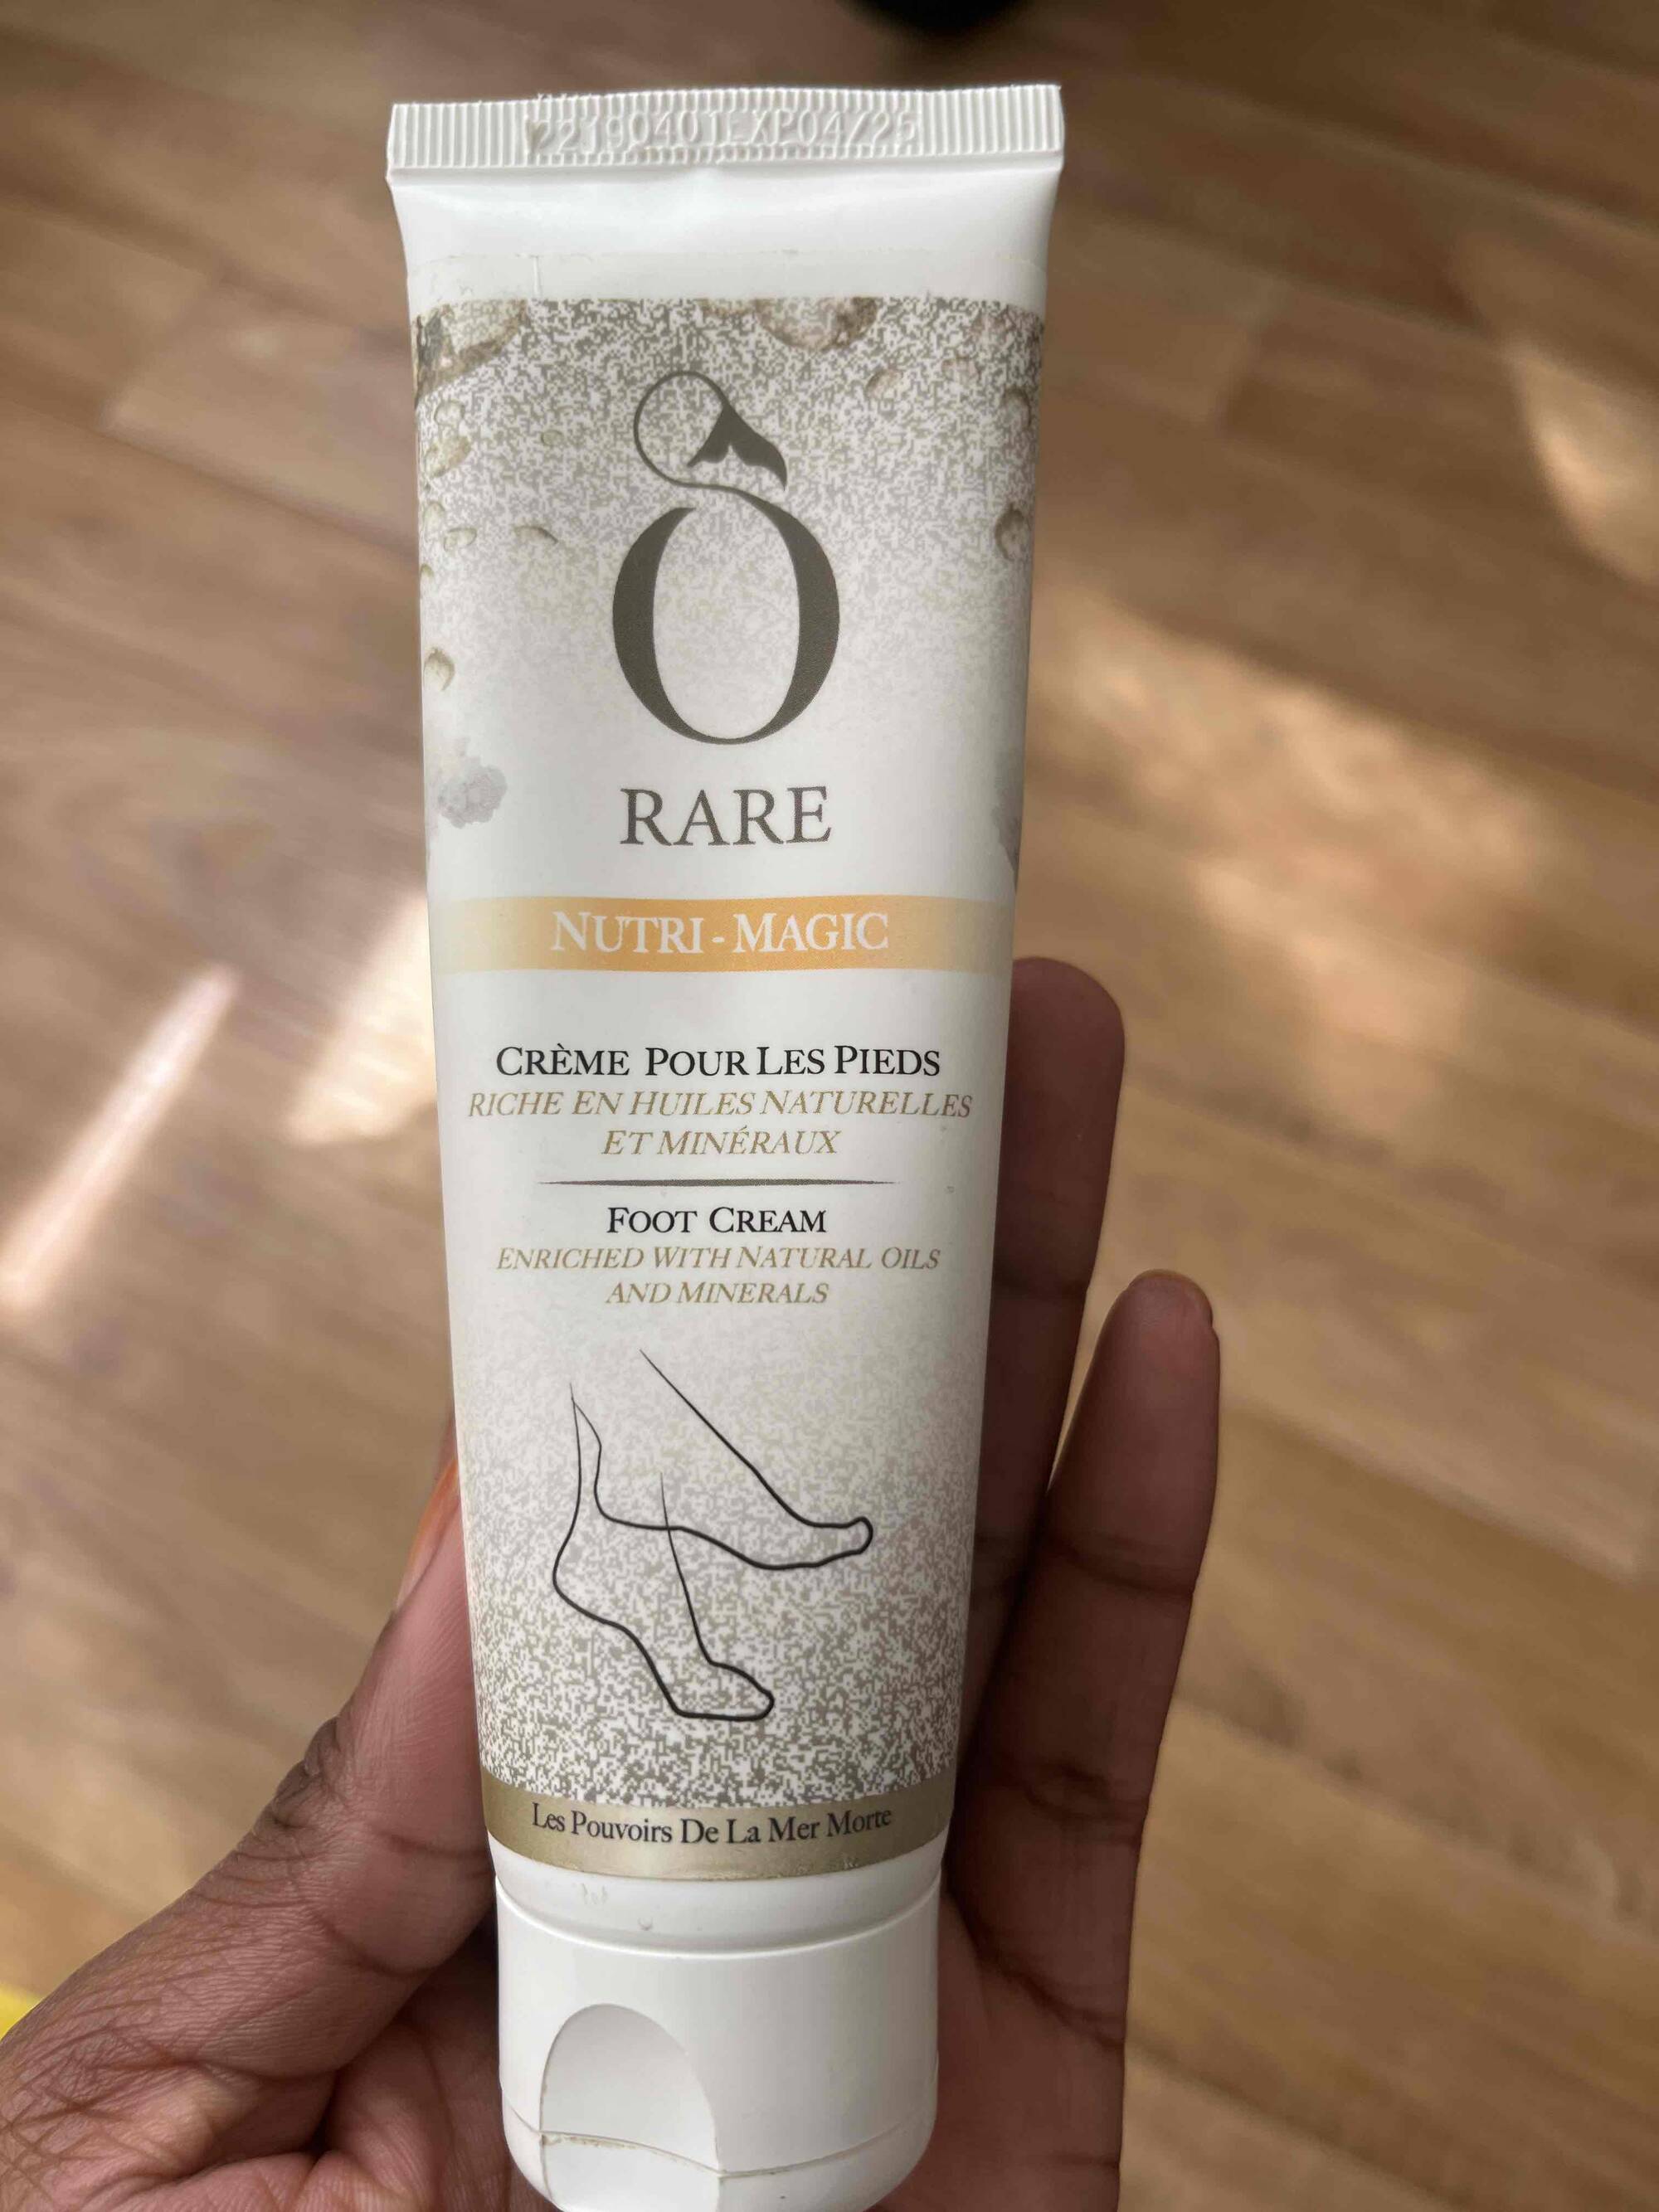 O-RARE - Crème pour les pieds nutri-magic